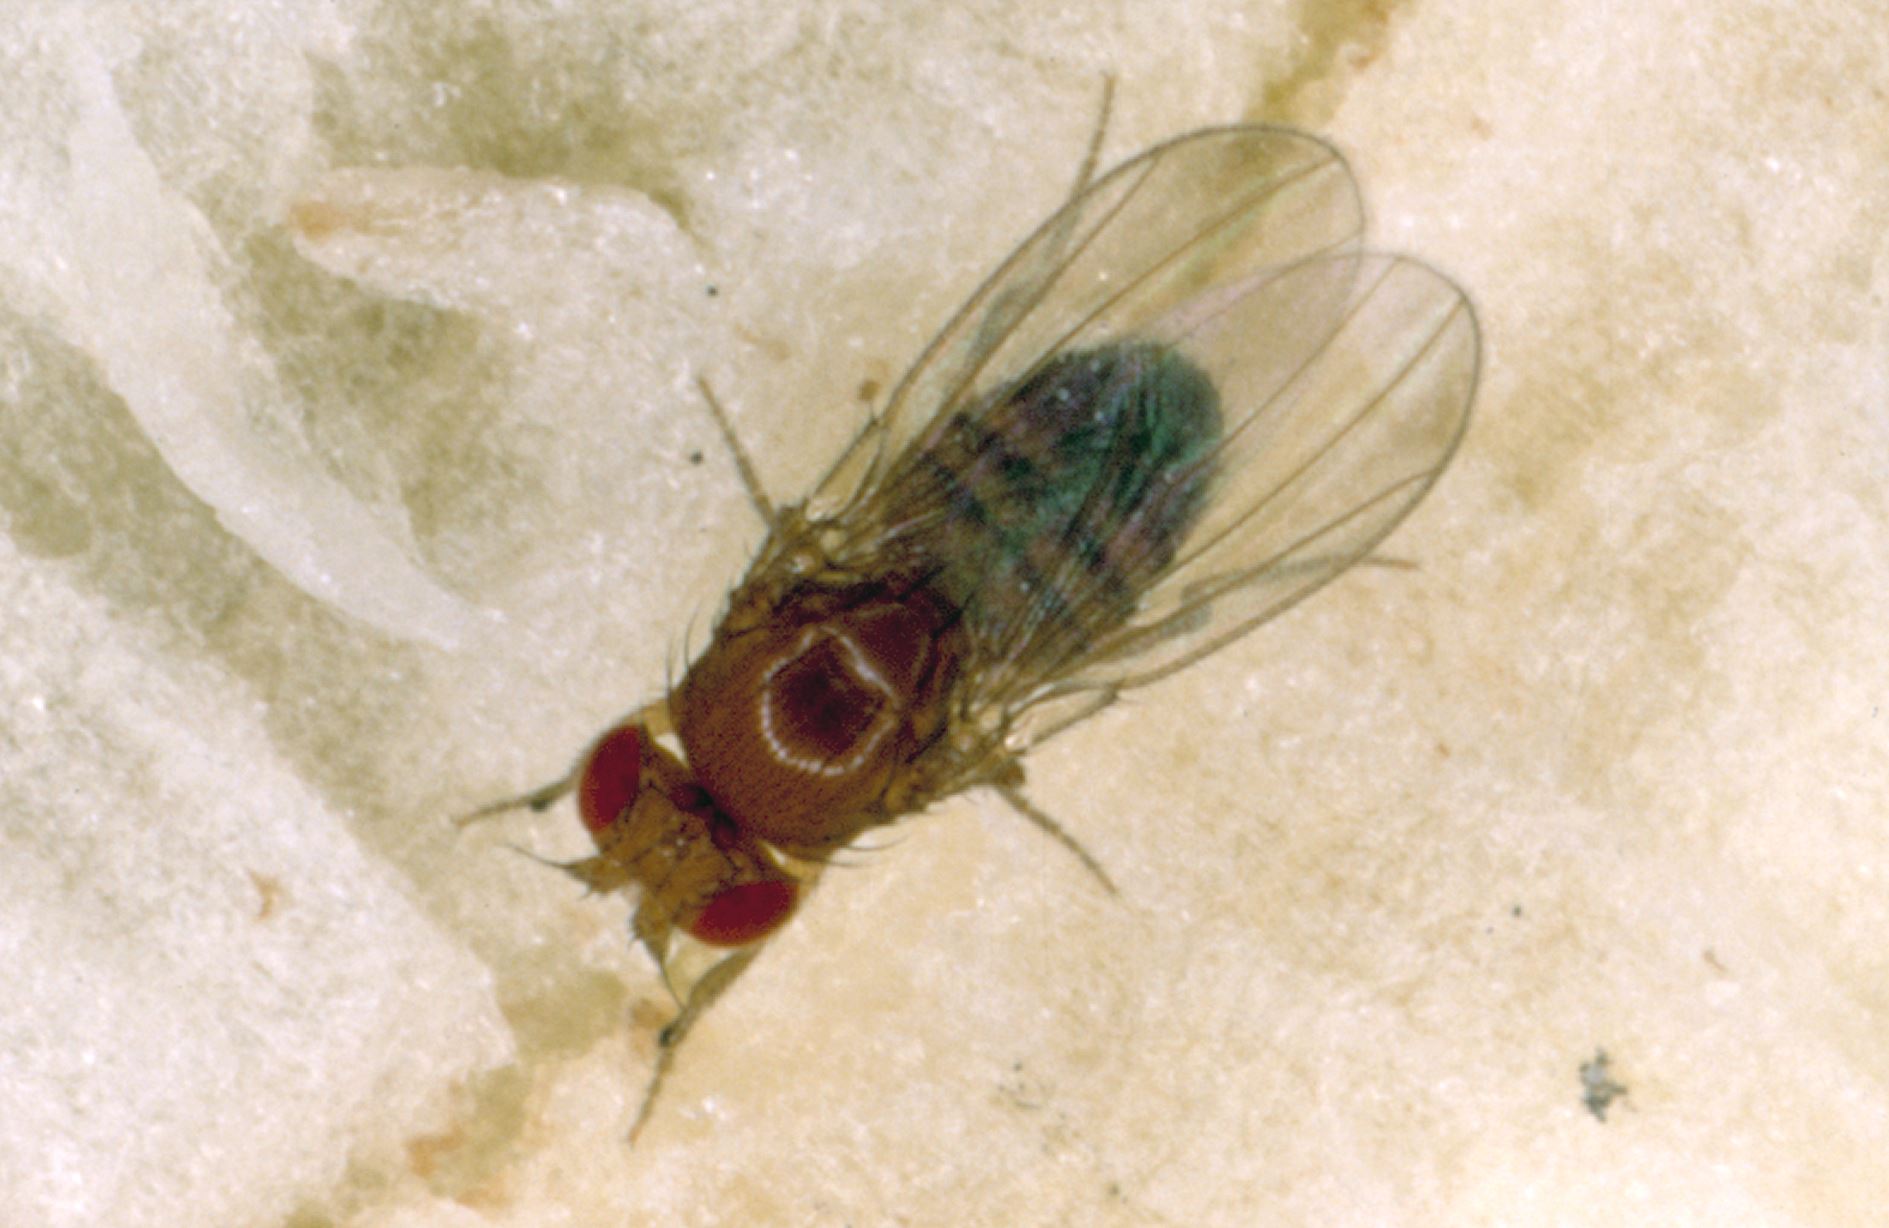 A fruit fly